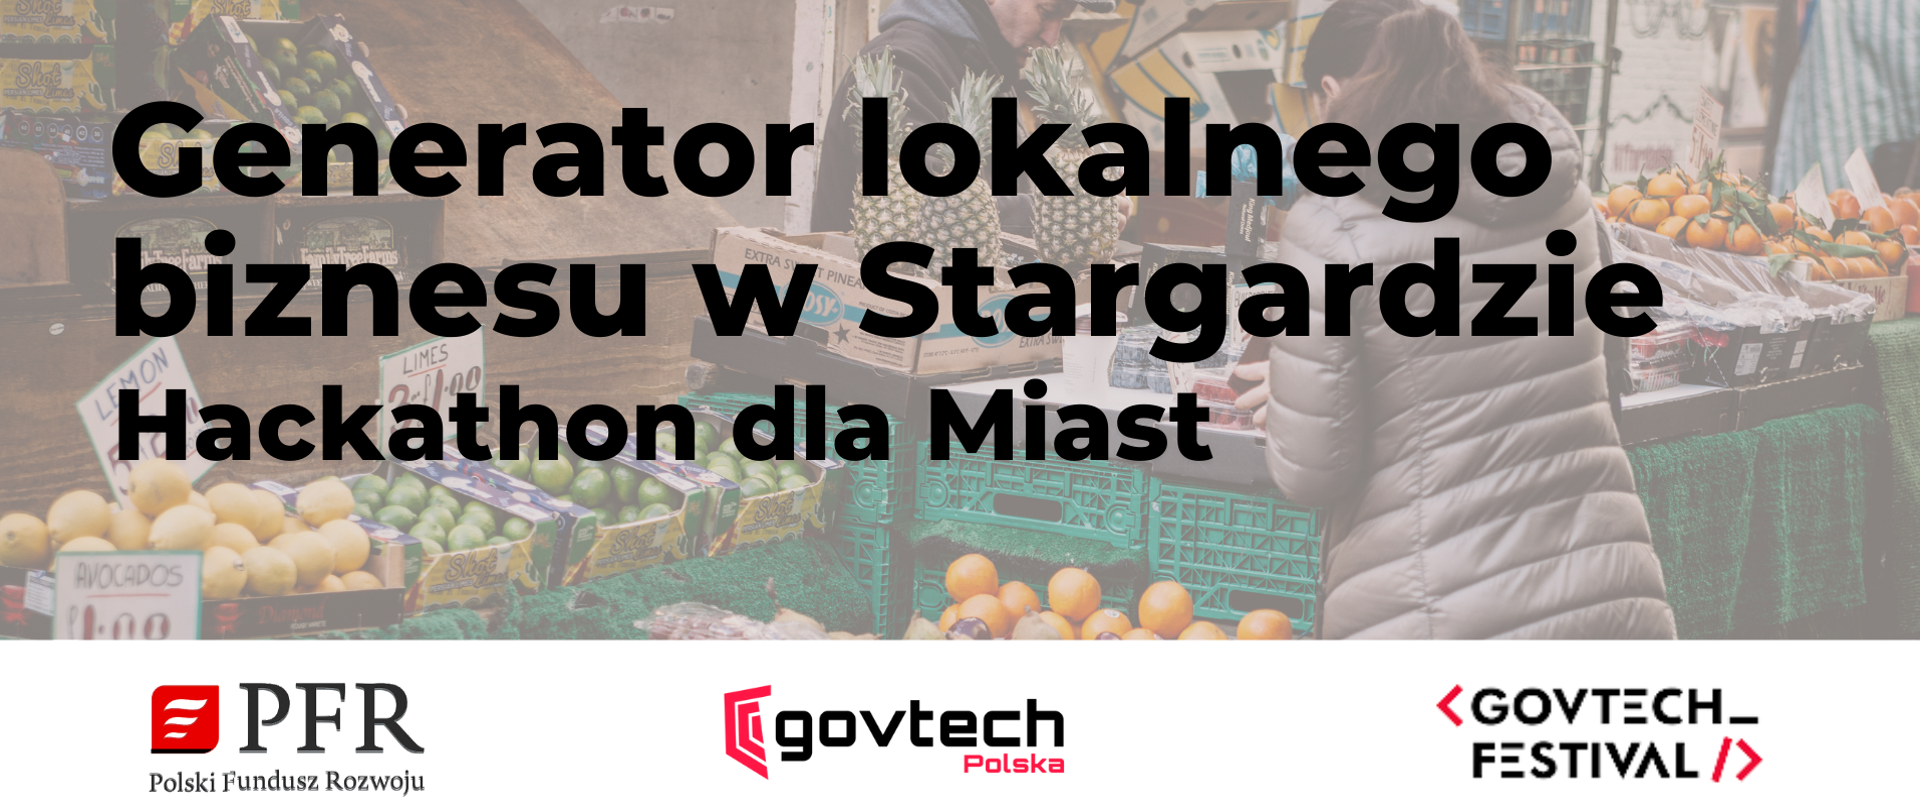 Napis na grafice: Generator lokalnego biznesu w Stargardzie Hackathon dla Miast